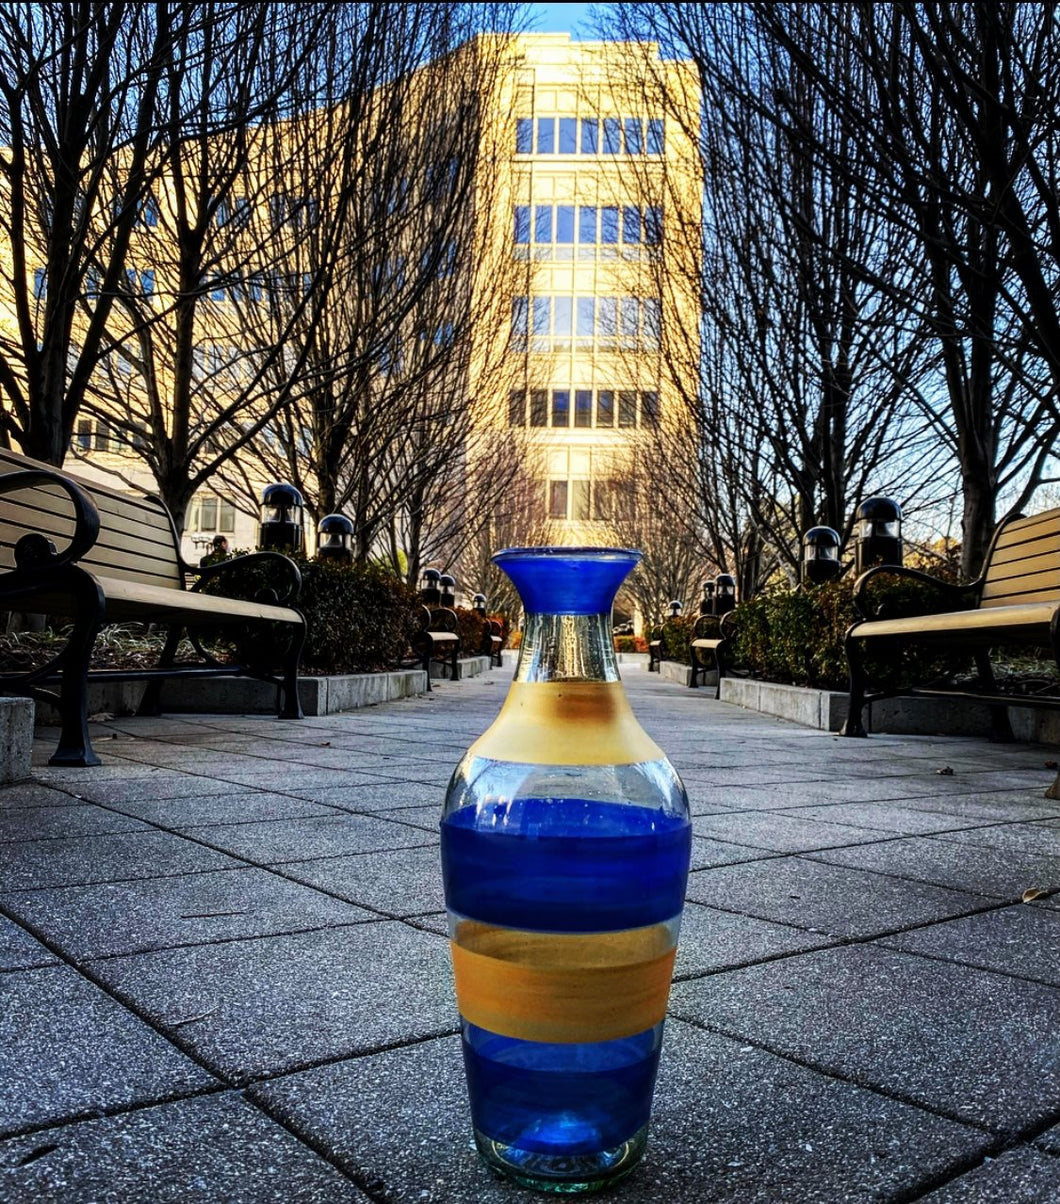 6:08 Vase